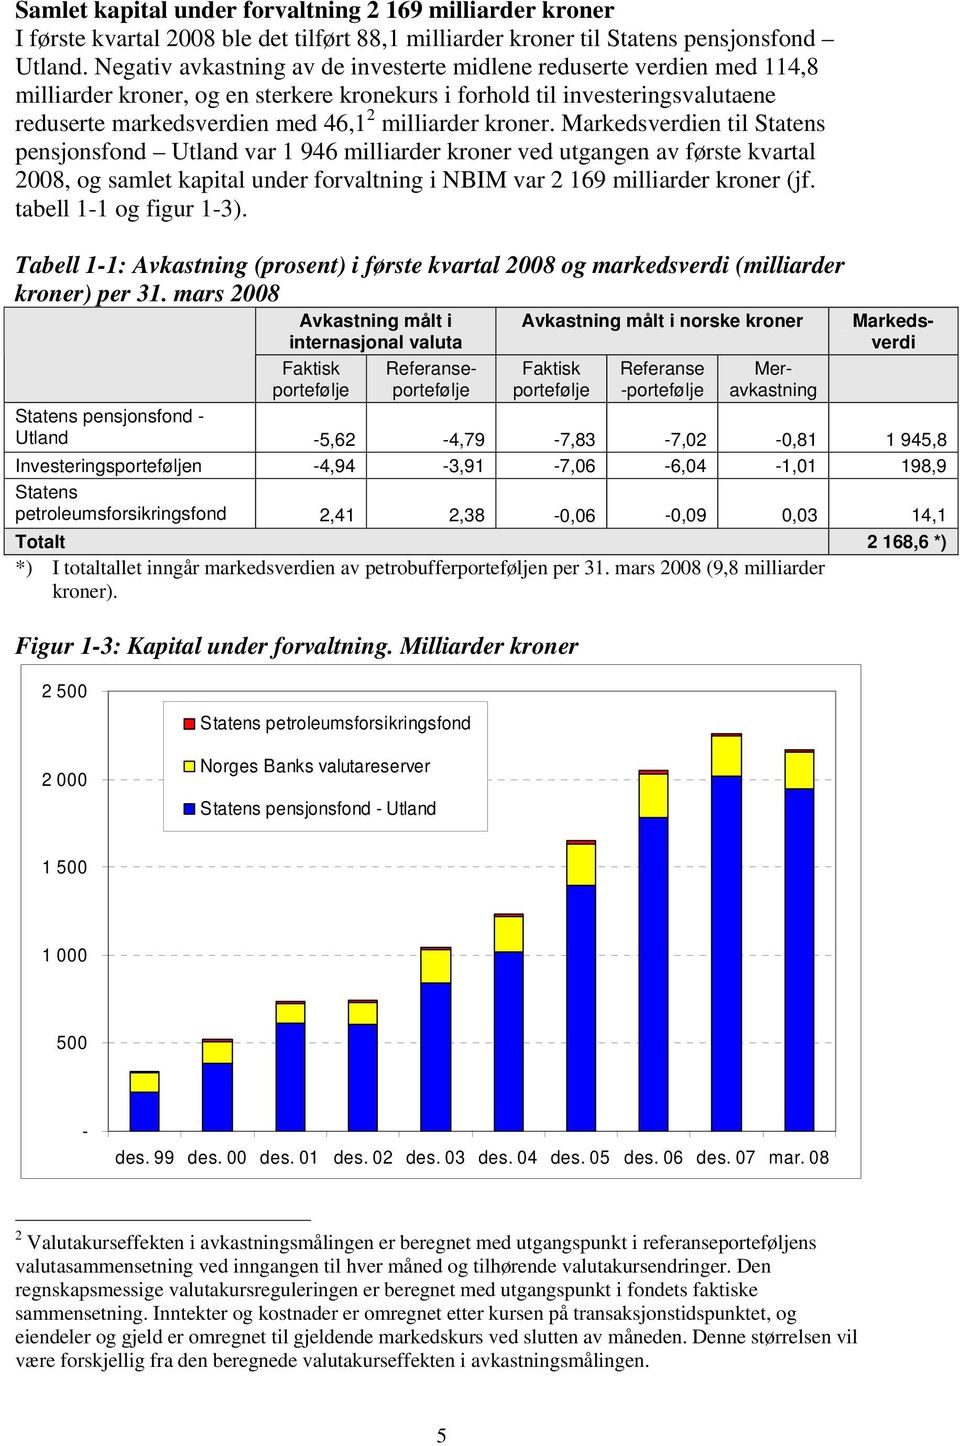 kroner. Markedsverdien til Statens pensjonsfond Utland var 1 946 milliarder kroner ved utgangen av første kvartal 2008, og samlet kapital under forvaltning i NBIM var 2 169 milliarder kroner (jf.